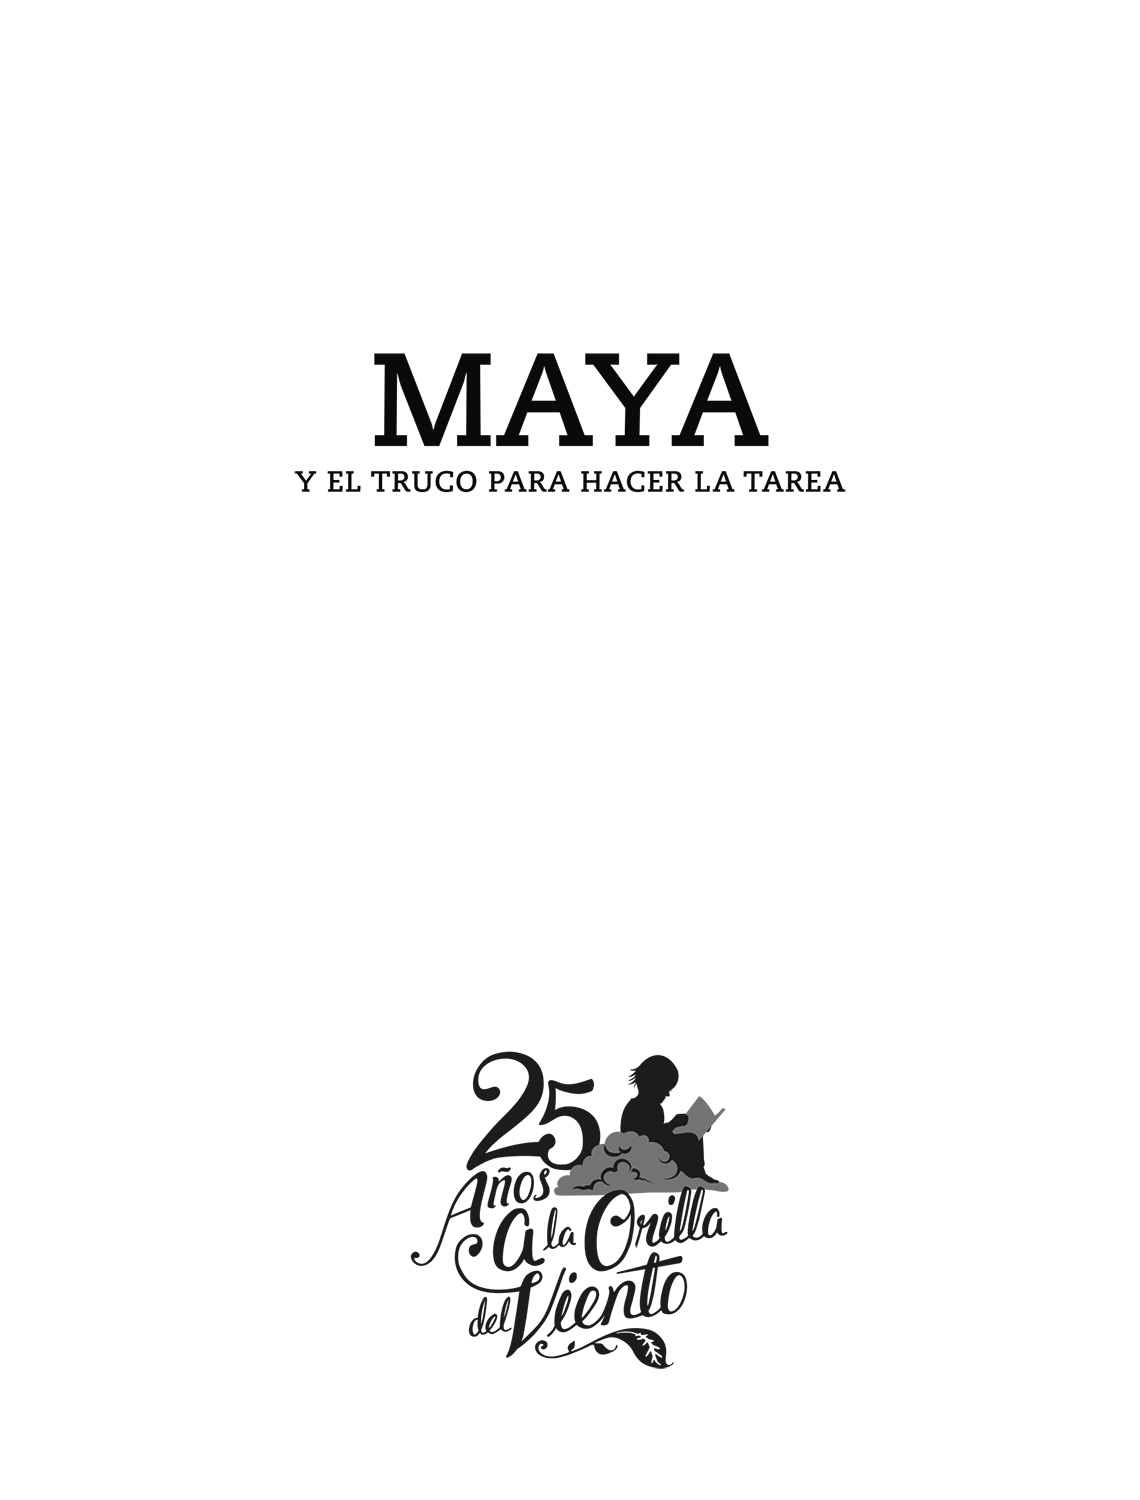 Maya y el truco para hacer la tarea / 25 años A la orilla del viento